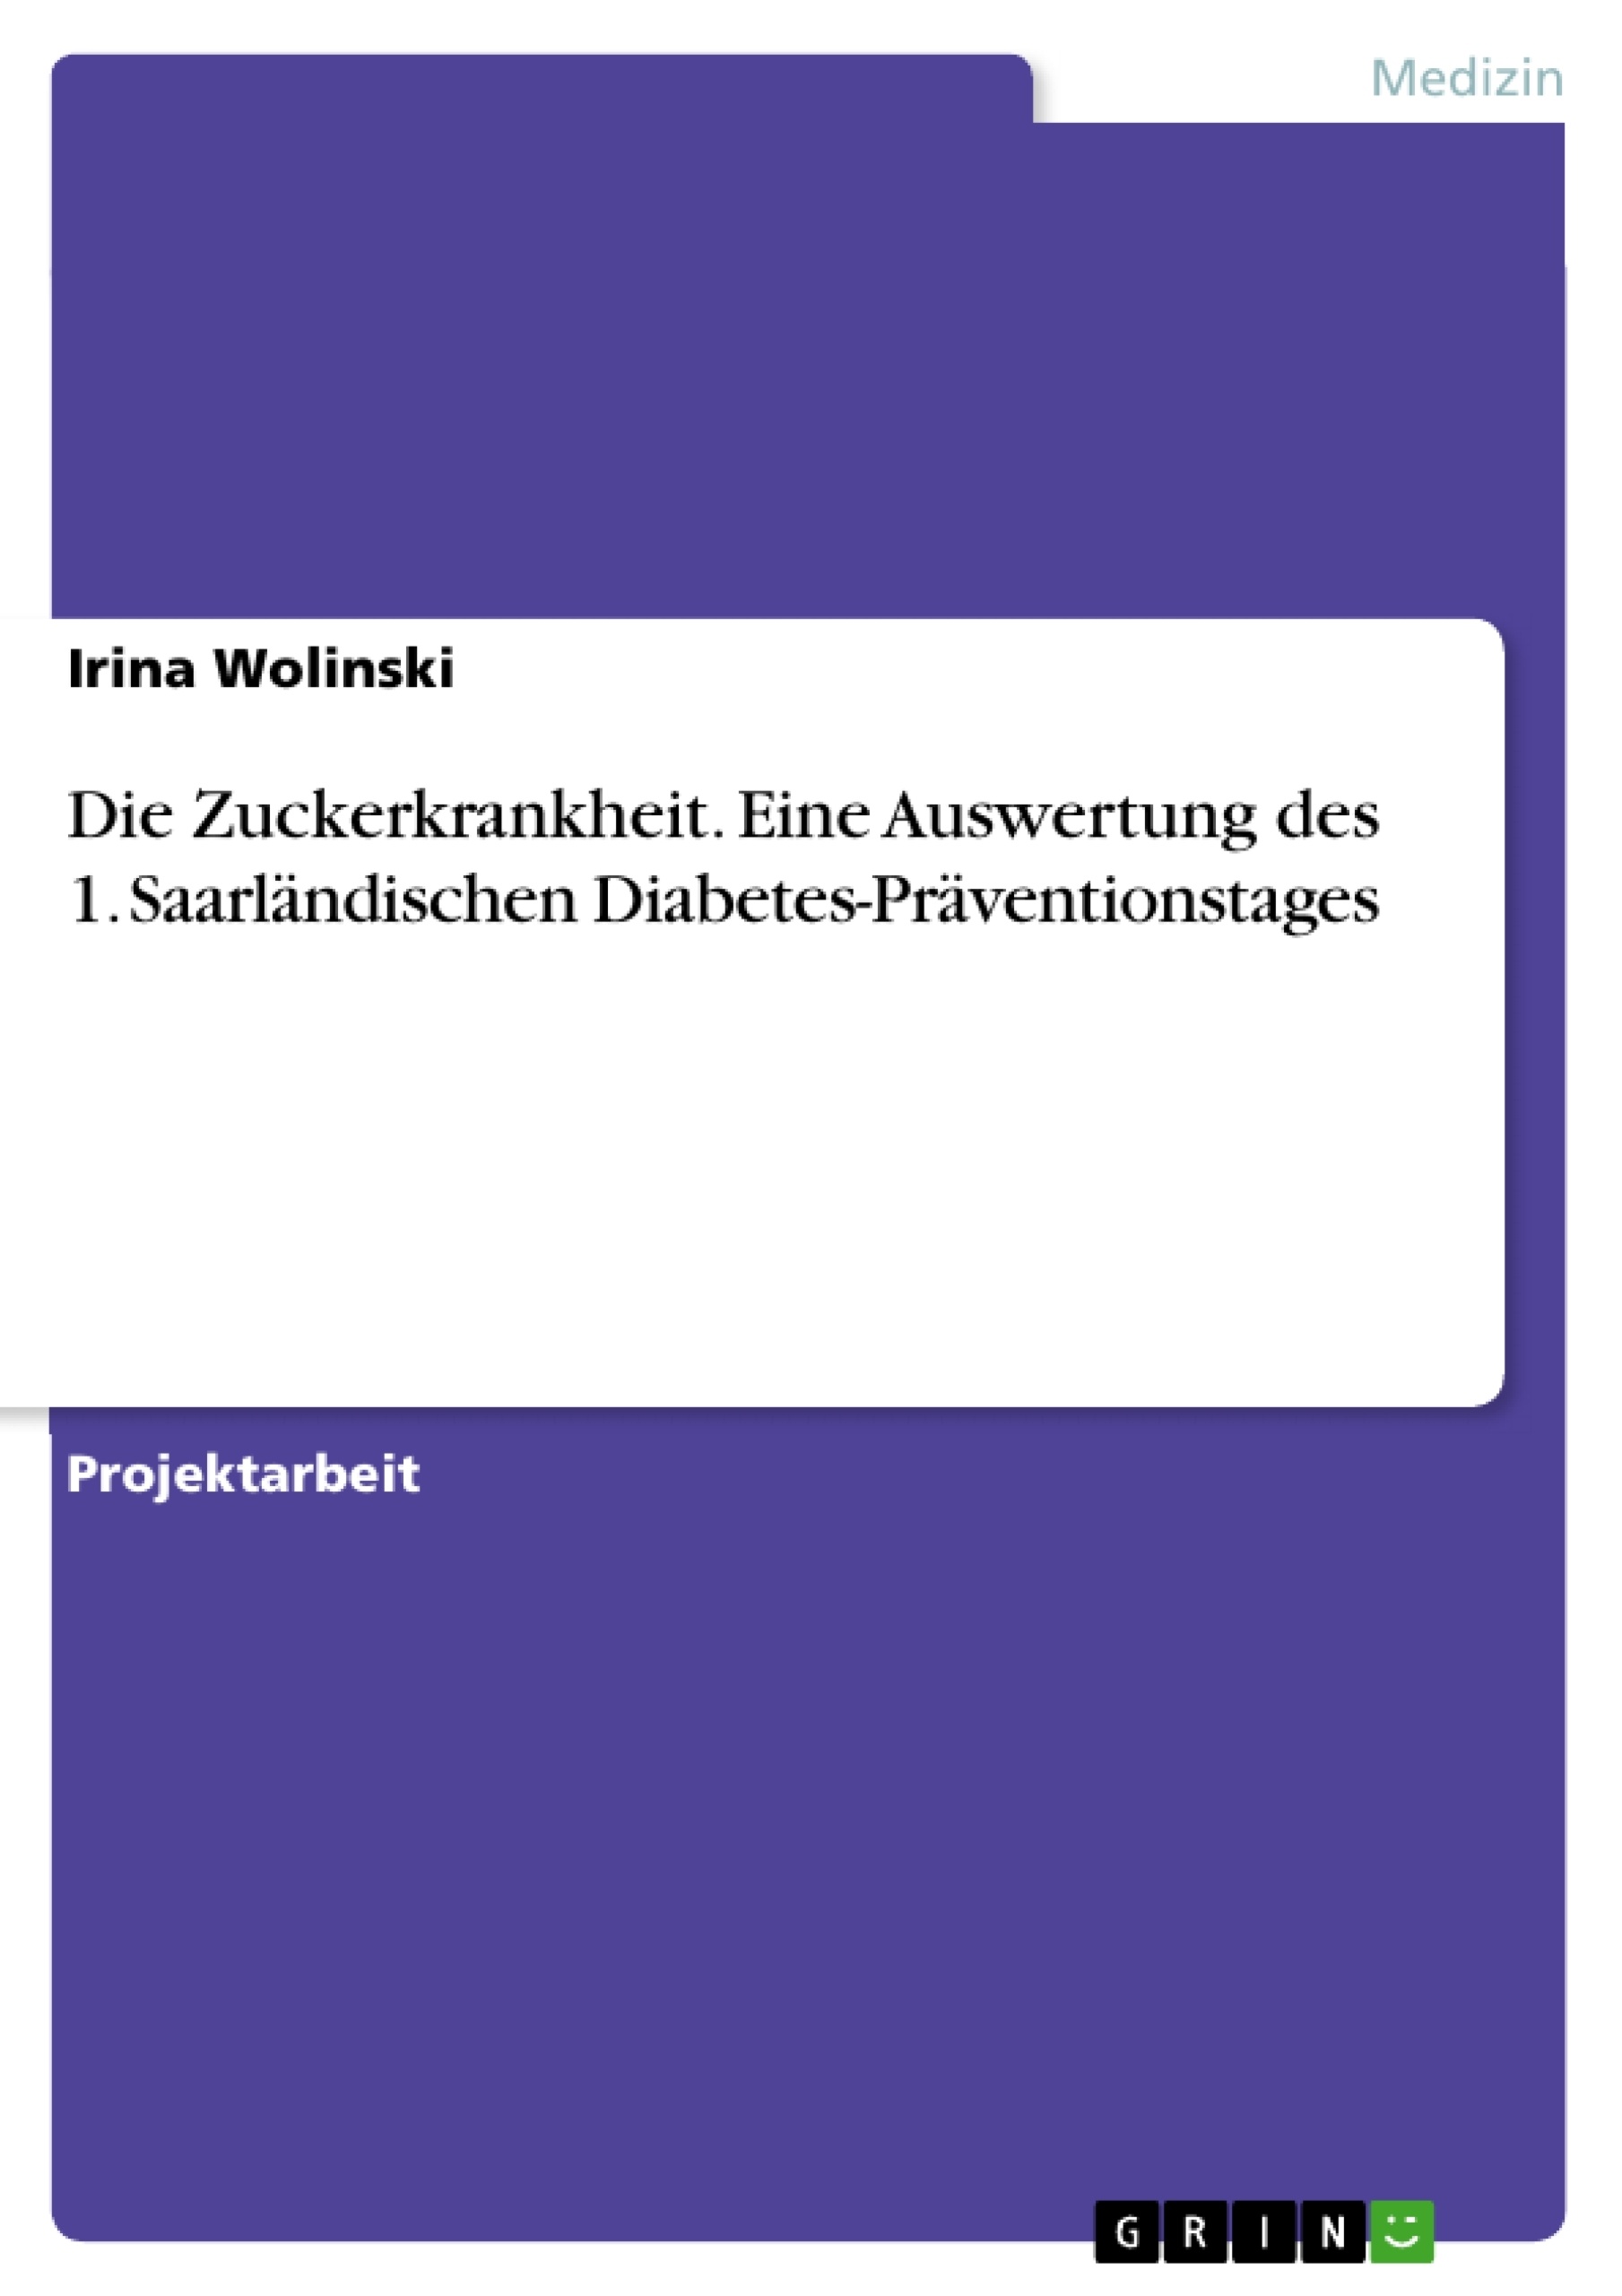 Title: Die Zuckerkrankheit. Eine Auswertung des 1. Saarländischen Diabetes-Präventionstages